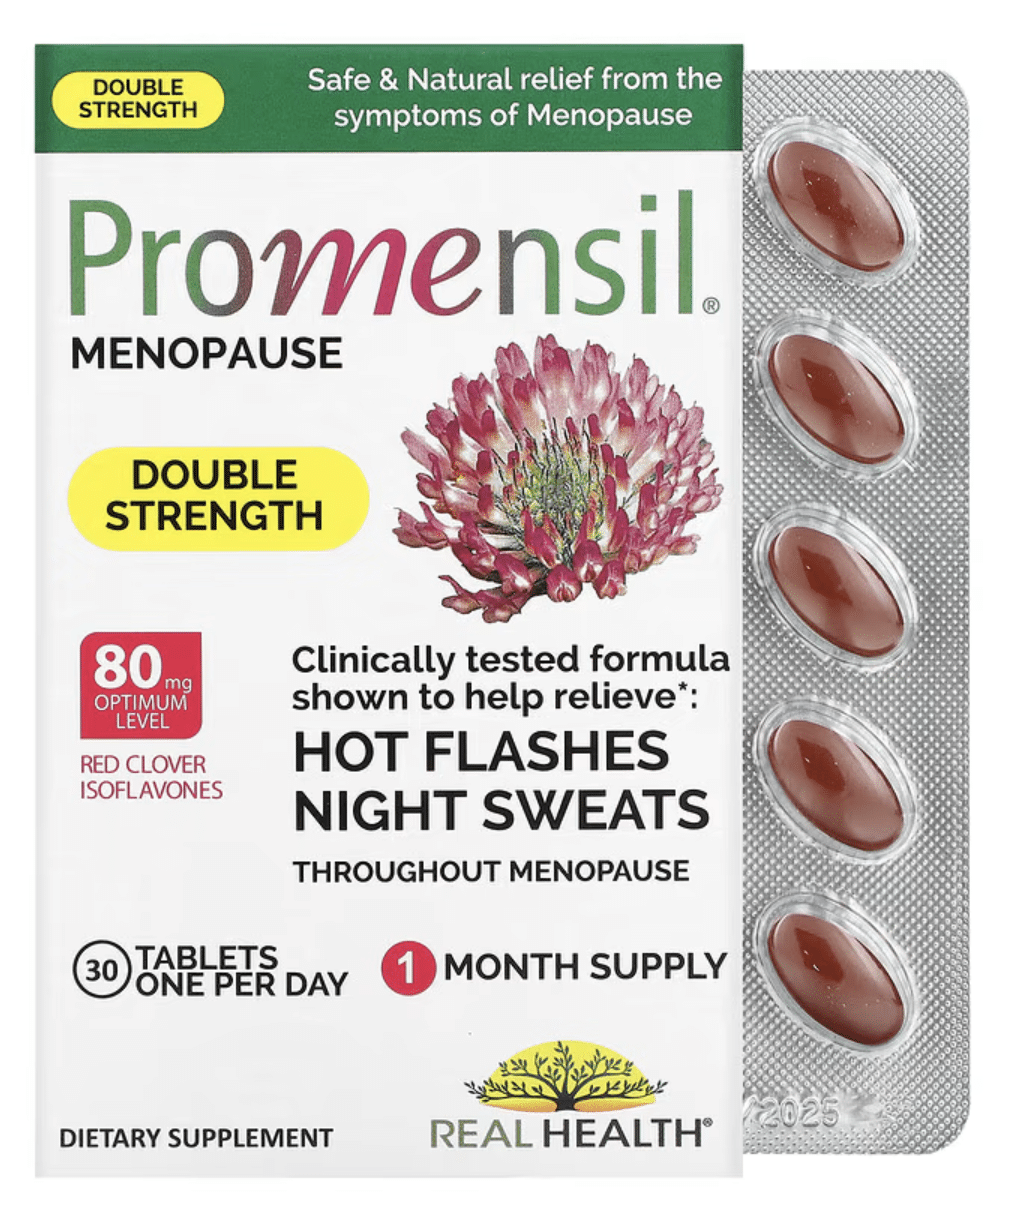 Promensil | What menopause symptoms